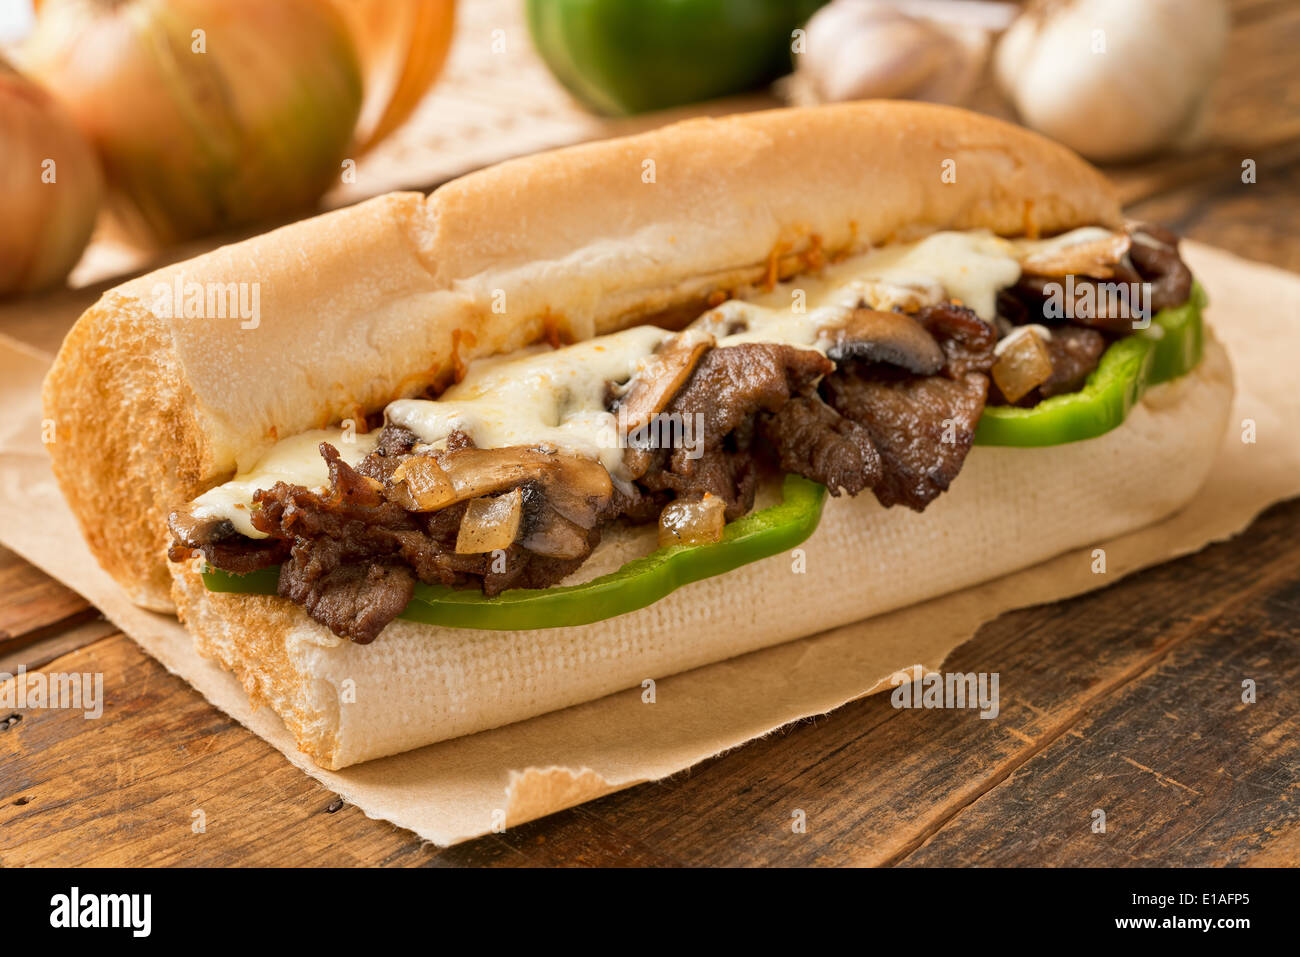 Eine köstliche Backofen backen Steak und Käse u-Boot-Sandwich mit Champignons, Paprika und Zwiebel. Stockfoto